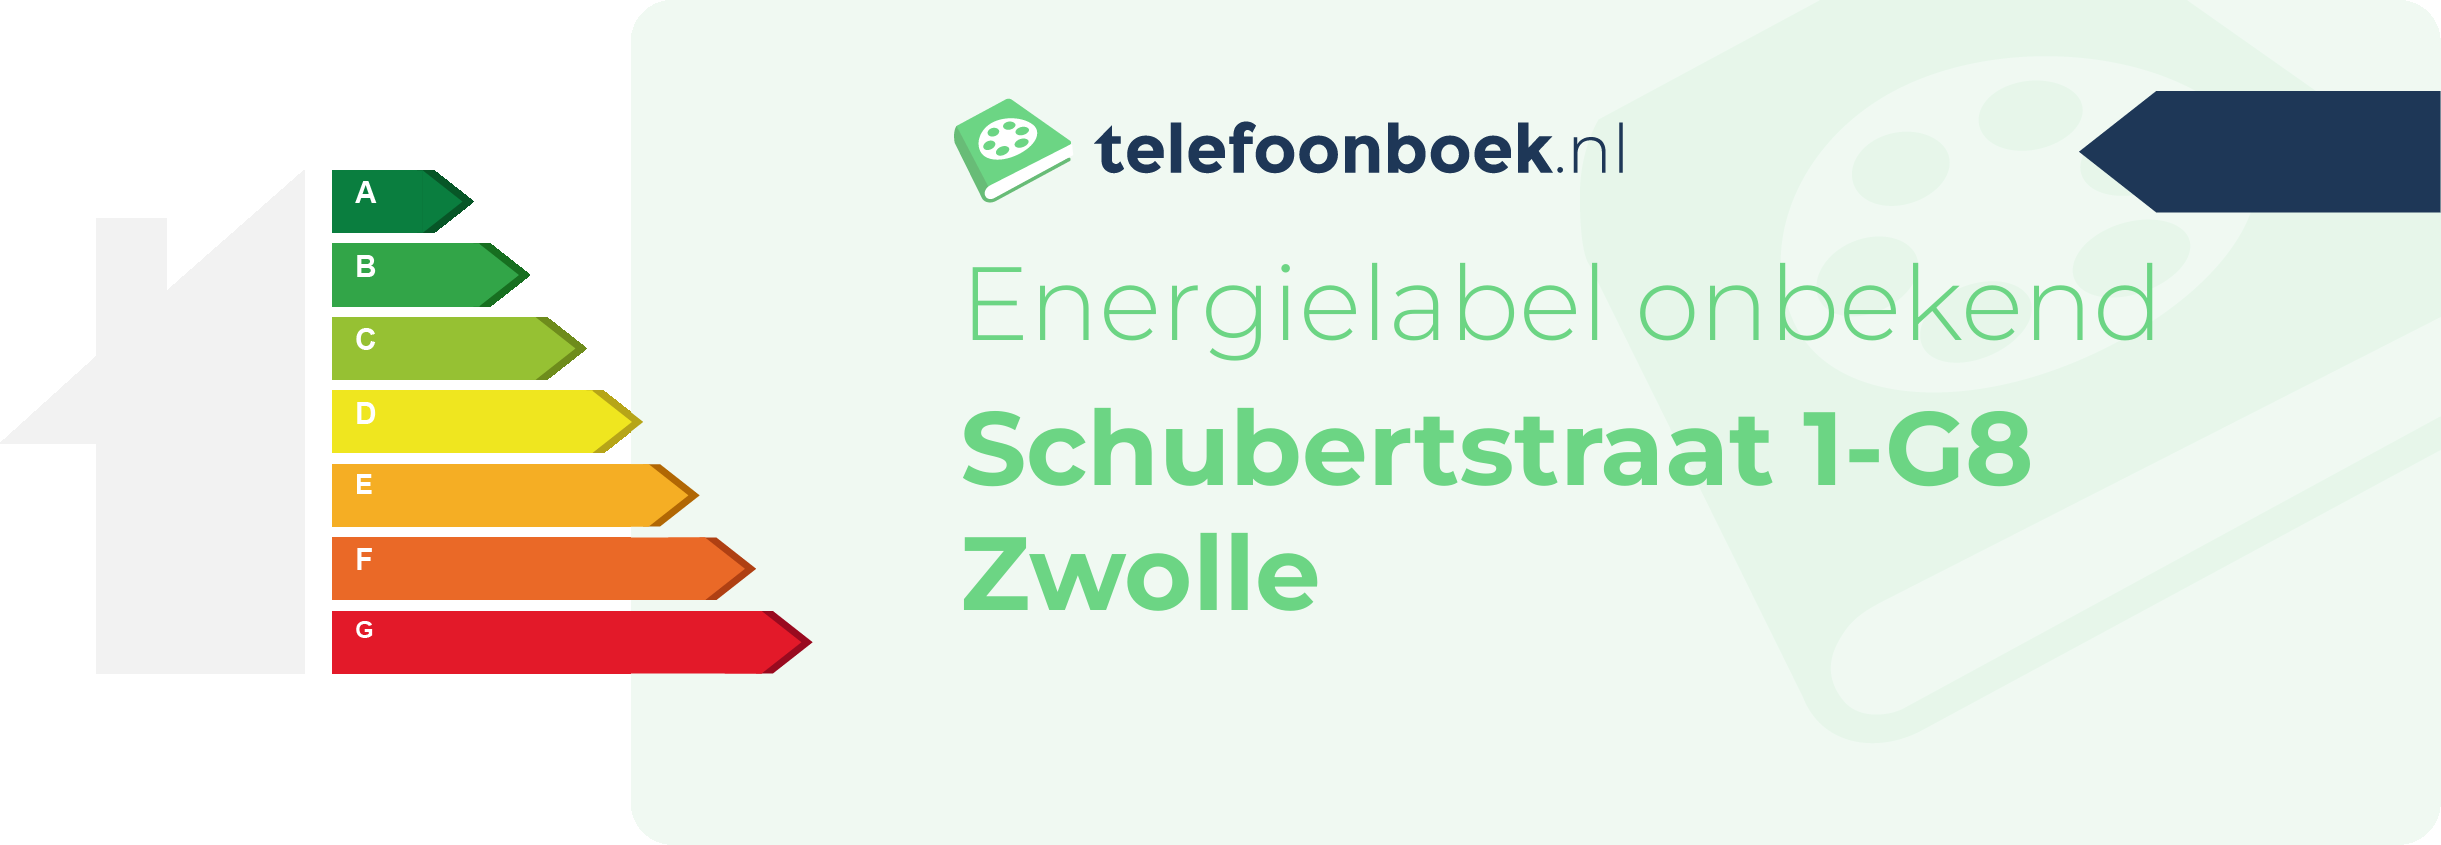 Energielabel Schubertstraat 1-G8 Zwolle